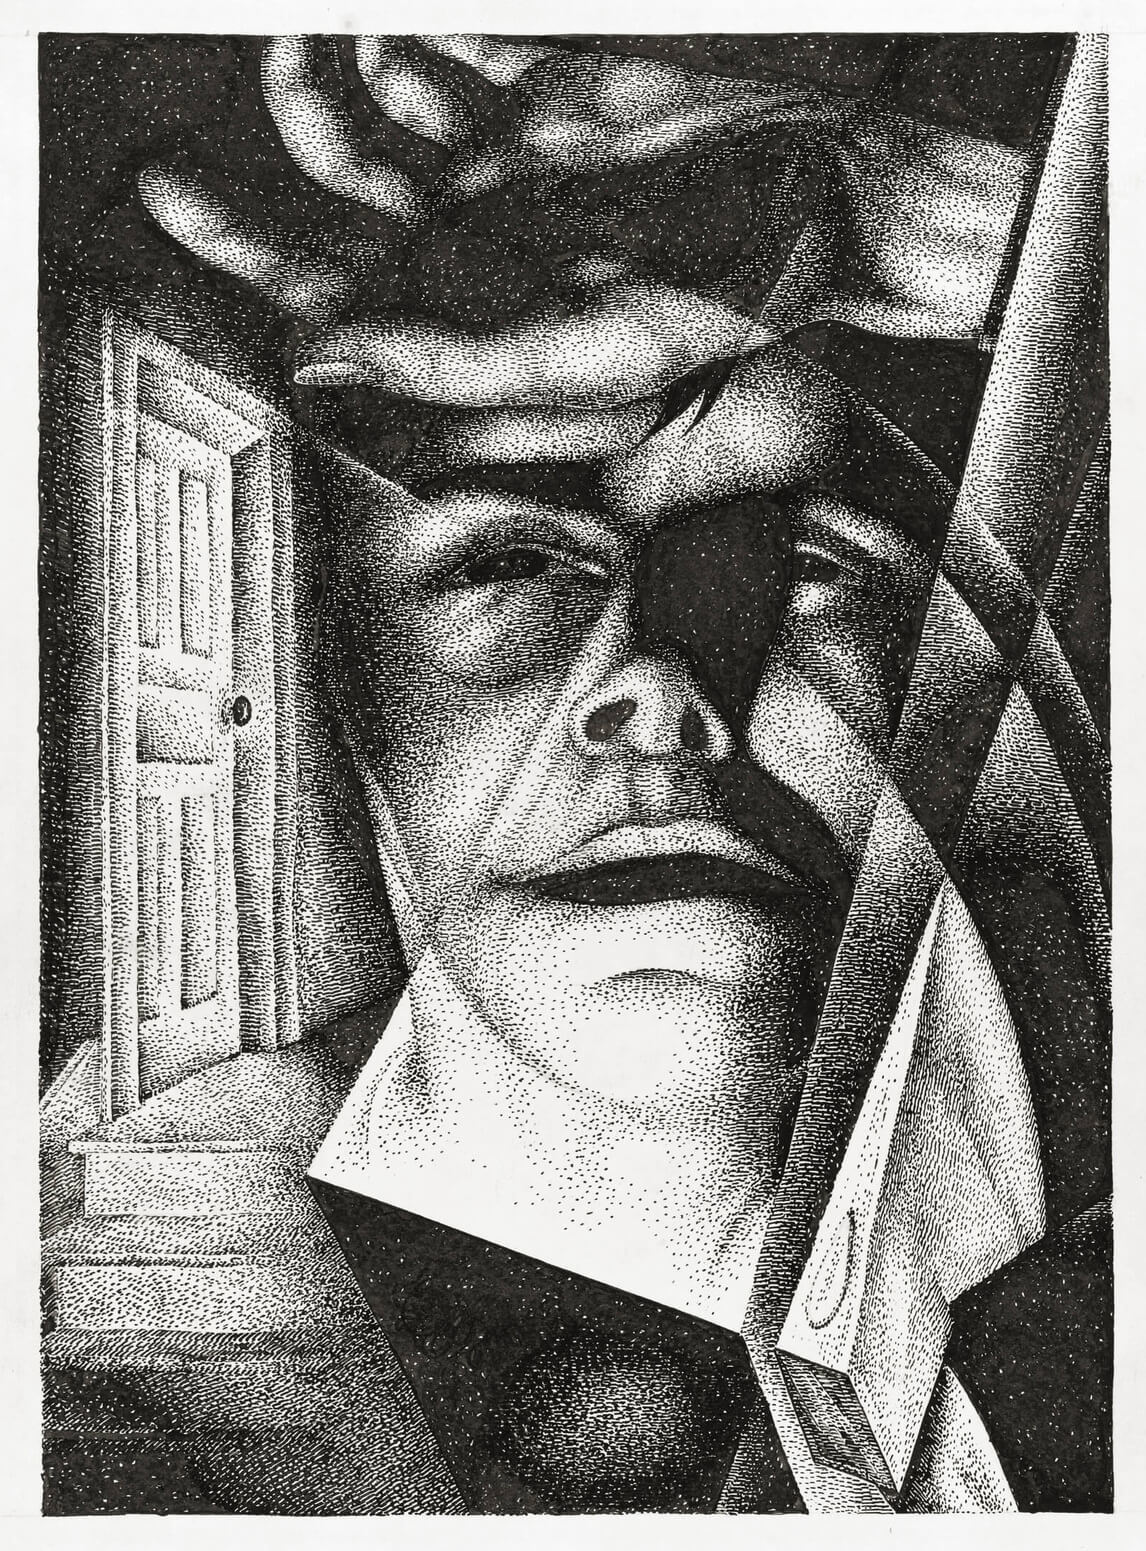 Bertram Brooker, Realization [Crime and Punishment Series] (Prise de conscience [Série Crime et châtiment]), 1930-1934